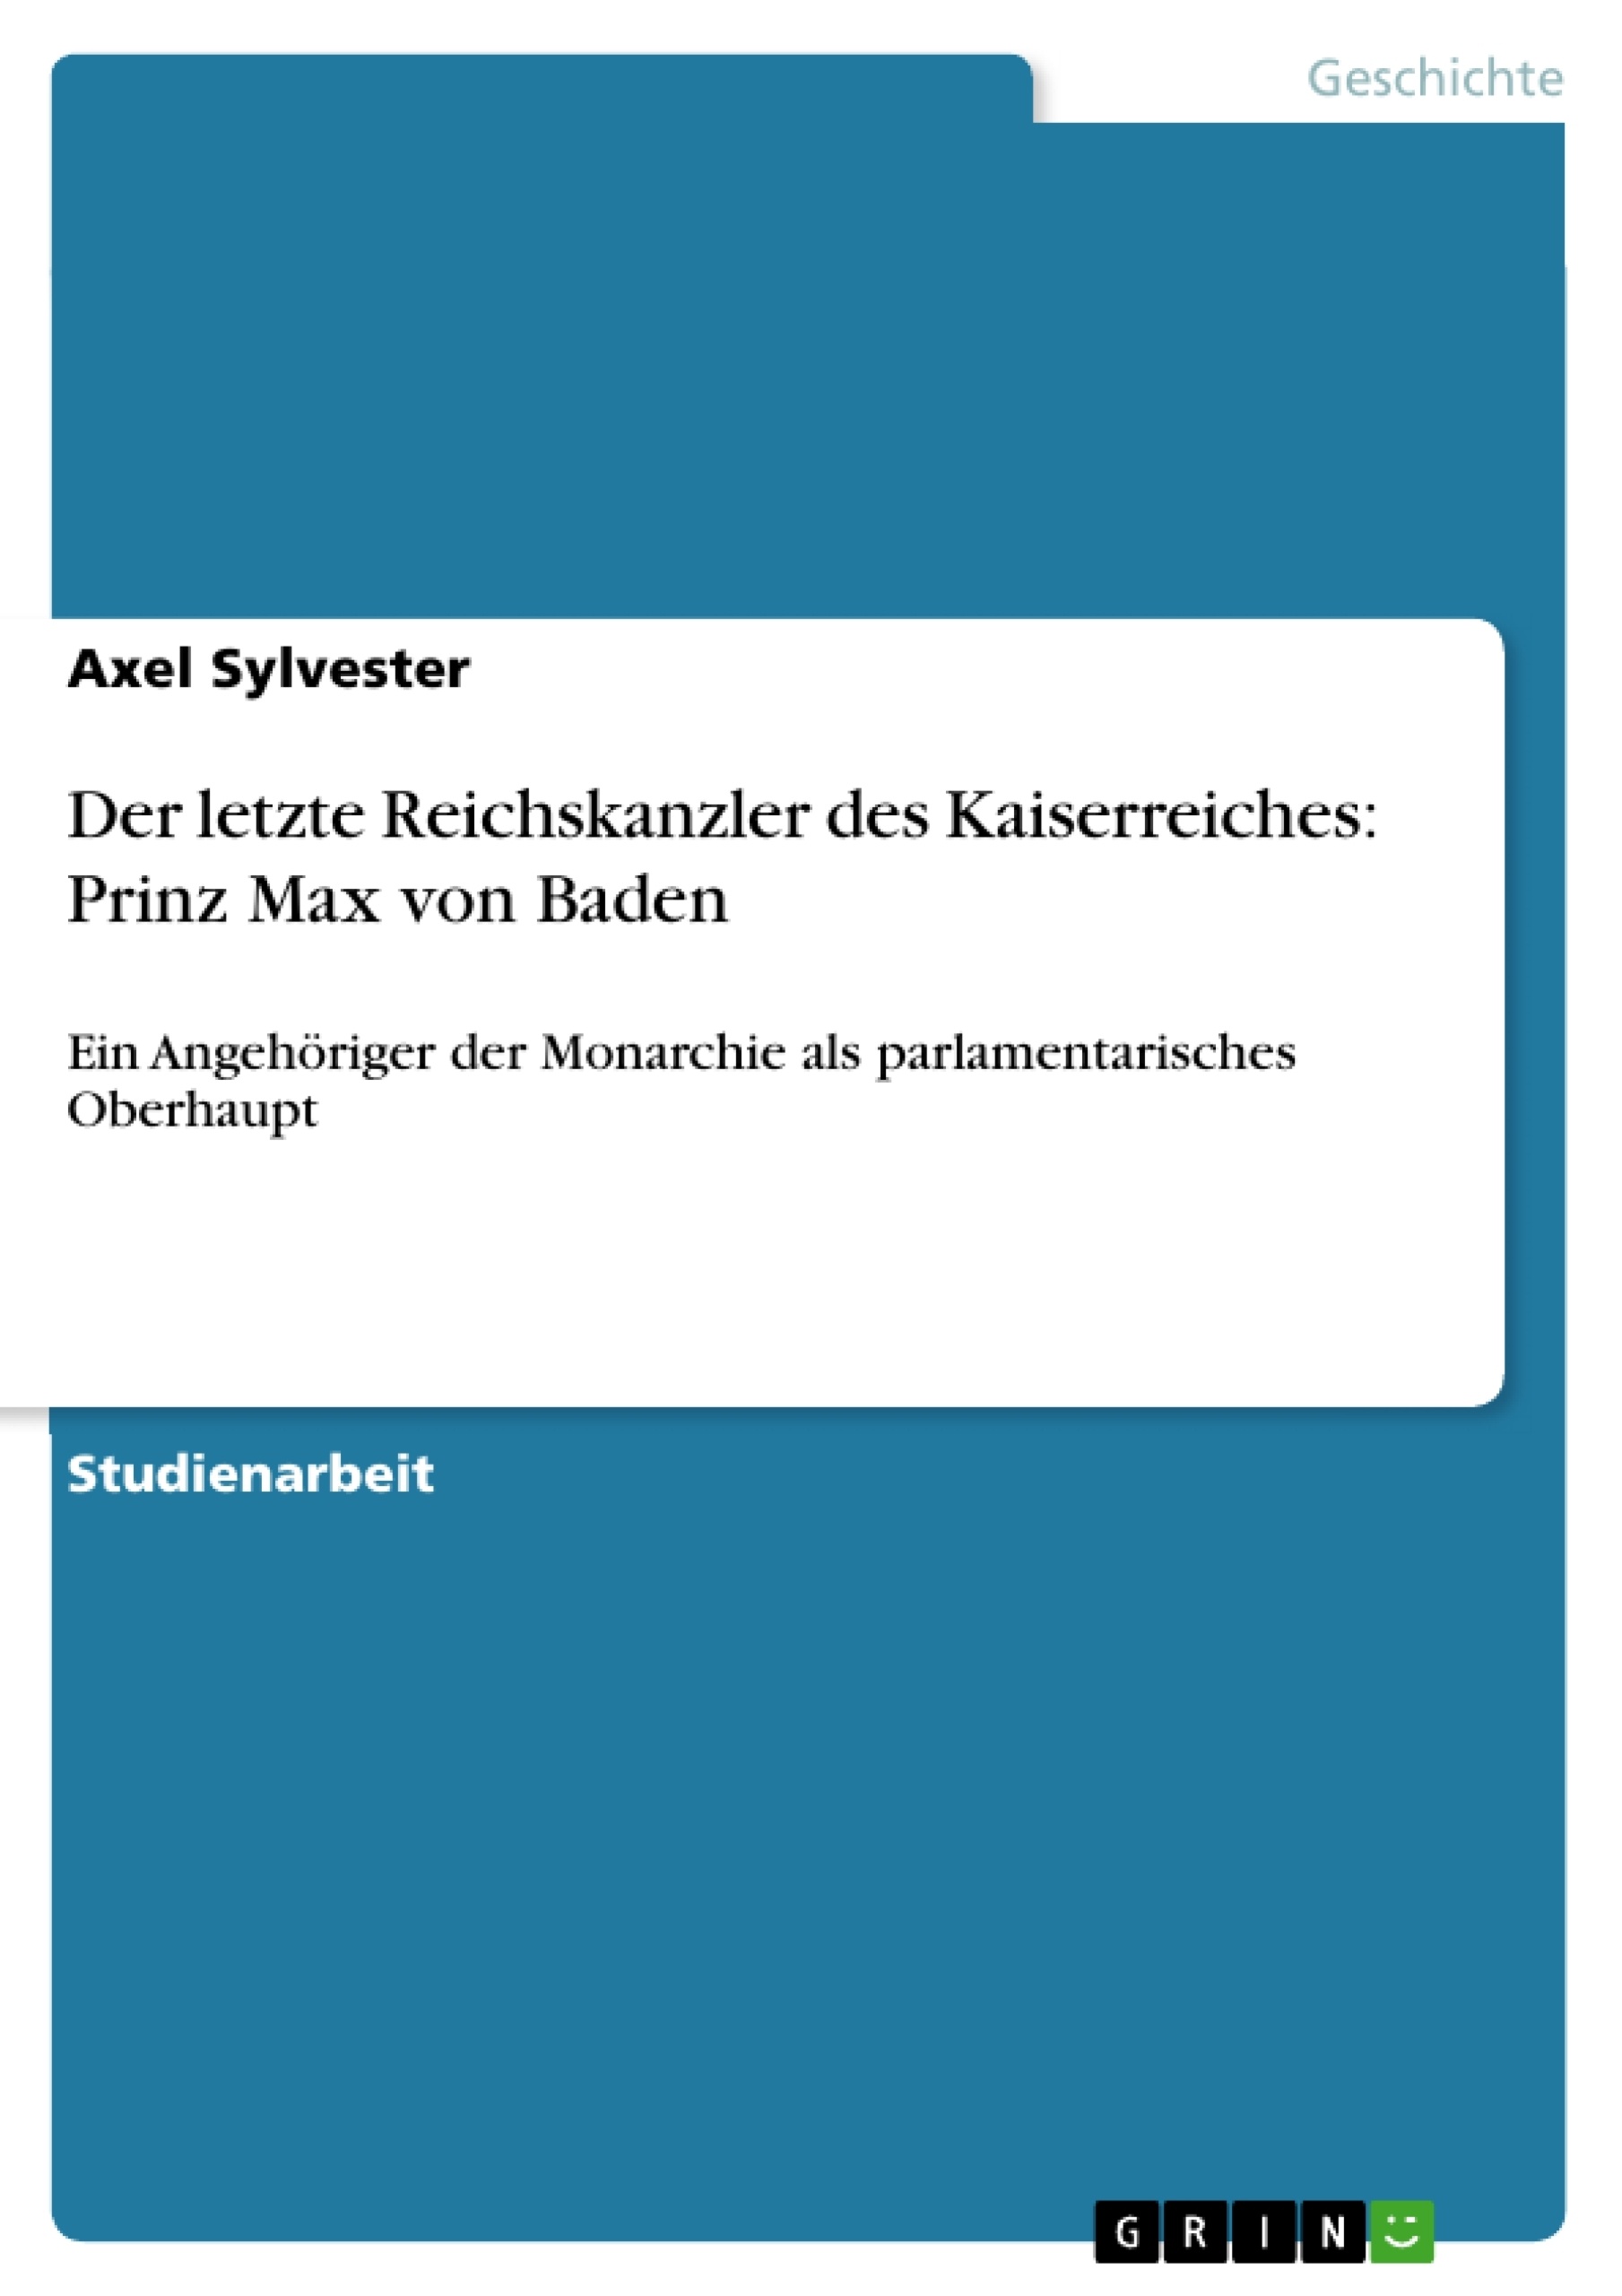 Título: Der letzte Reichskanzler des Kaiserreiches: Prinz Max von Baden